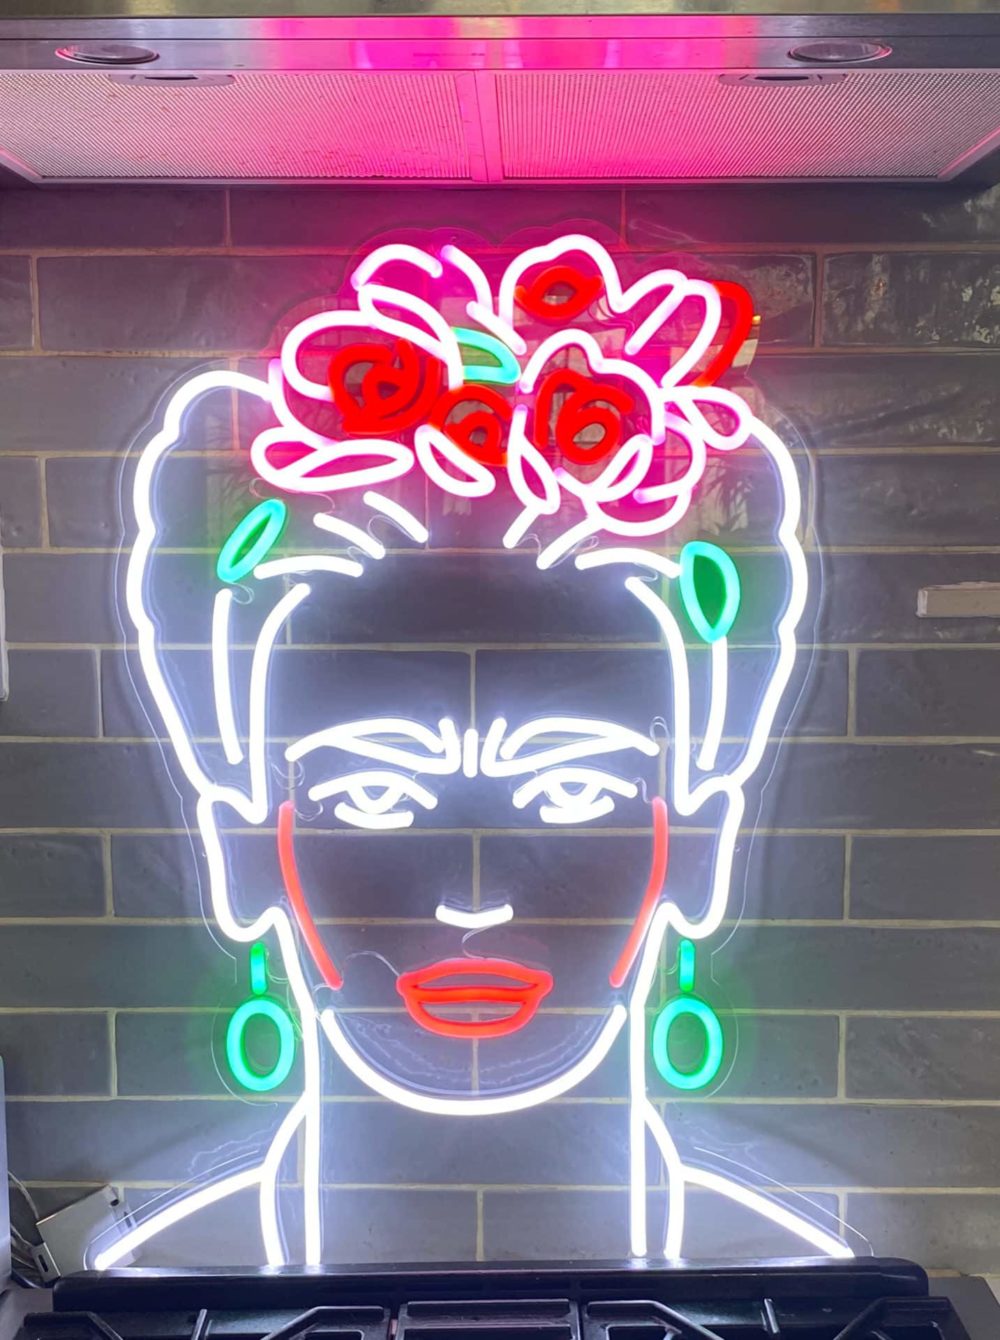 PORTRAIT Frida Kahlo neon couleur hp